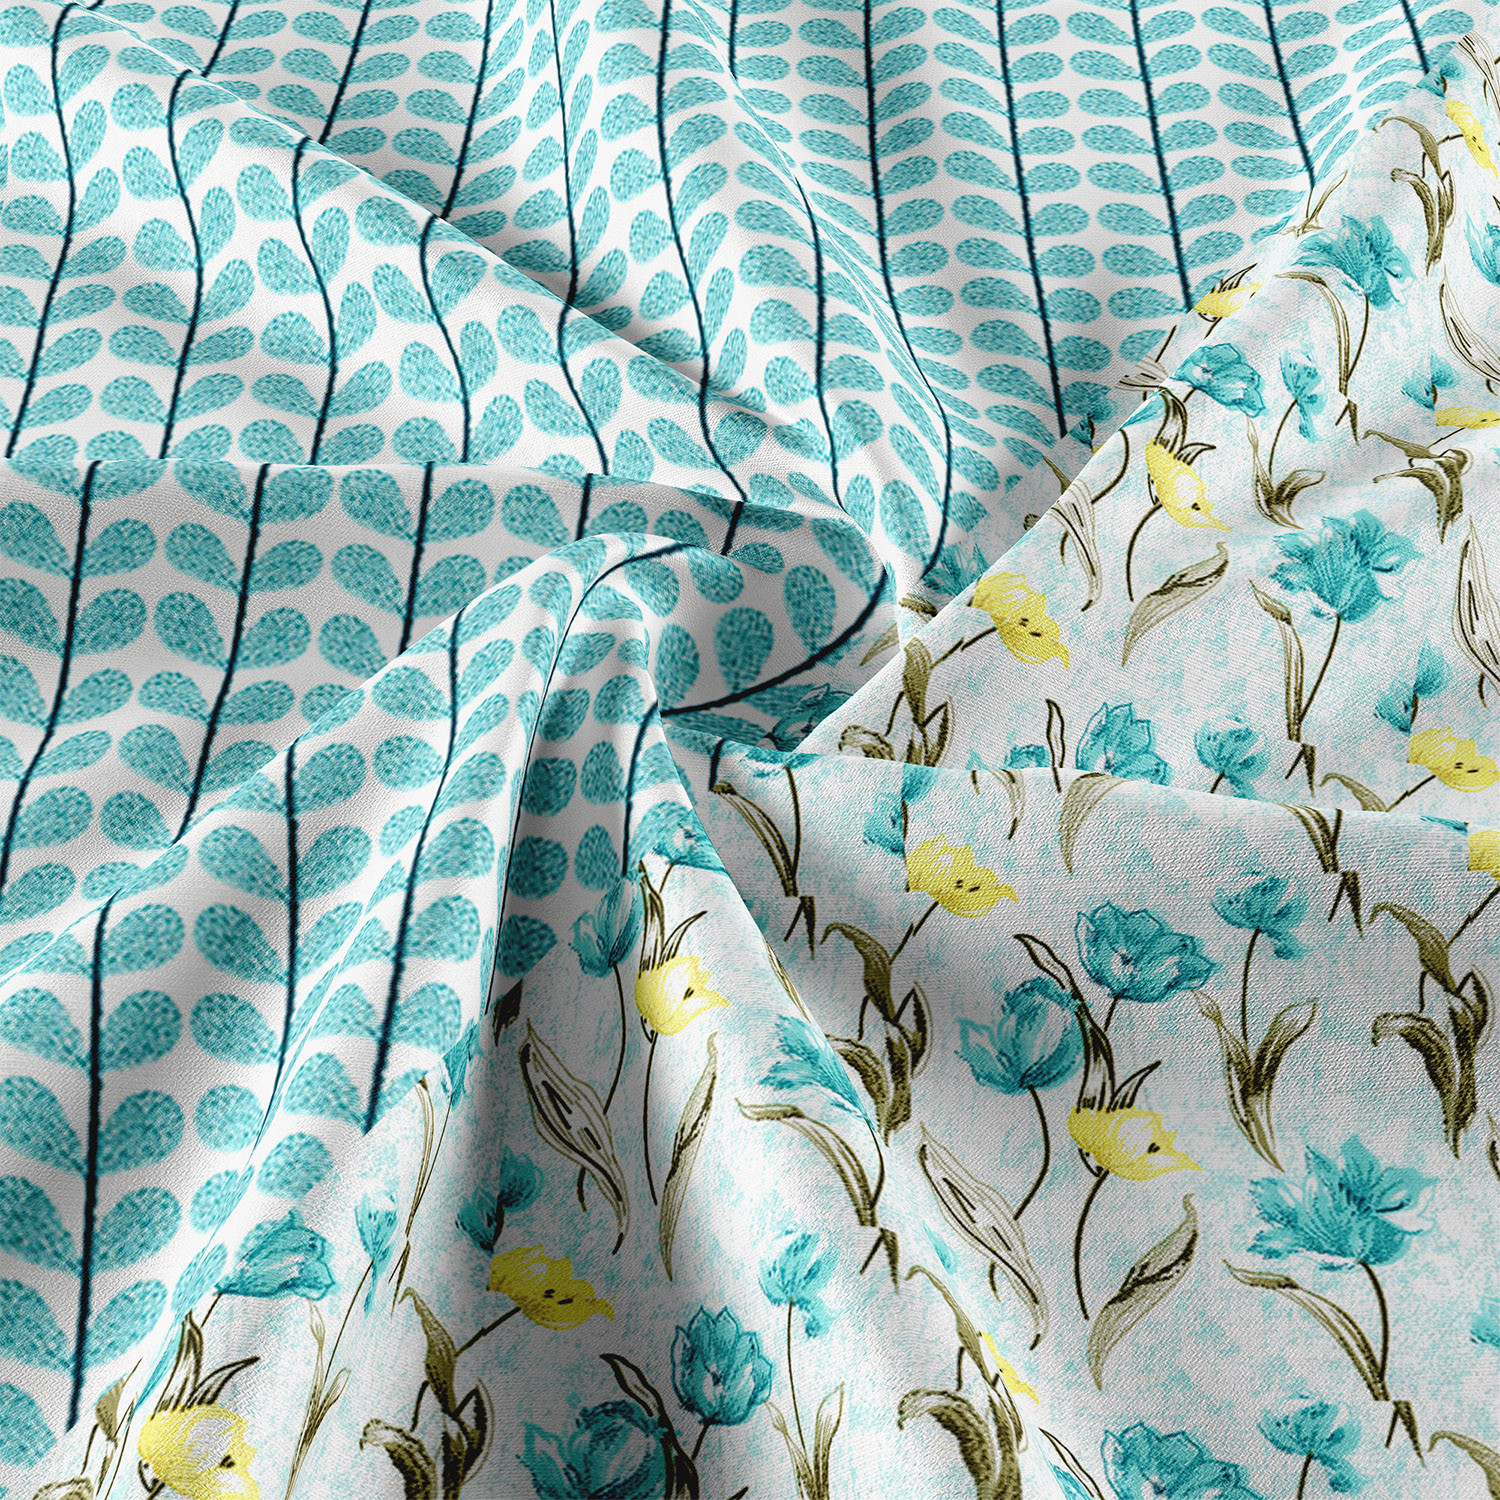 Kuber Industries Blanket | Cotton Double Bed Dohar | Blanket For Home | Reversible AC Blanket For Travelling | Blanket For Summer | Blanket For Winters | Blue Flower | White